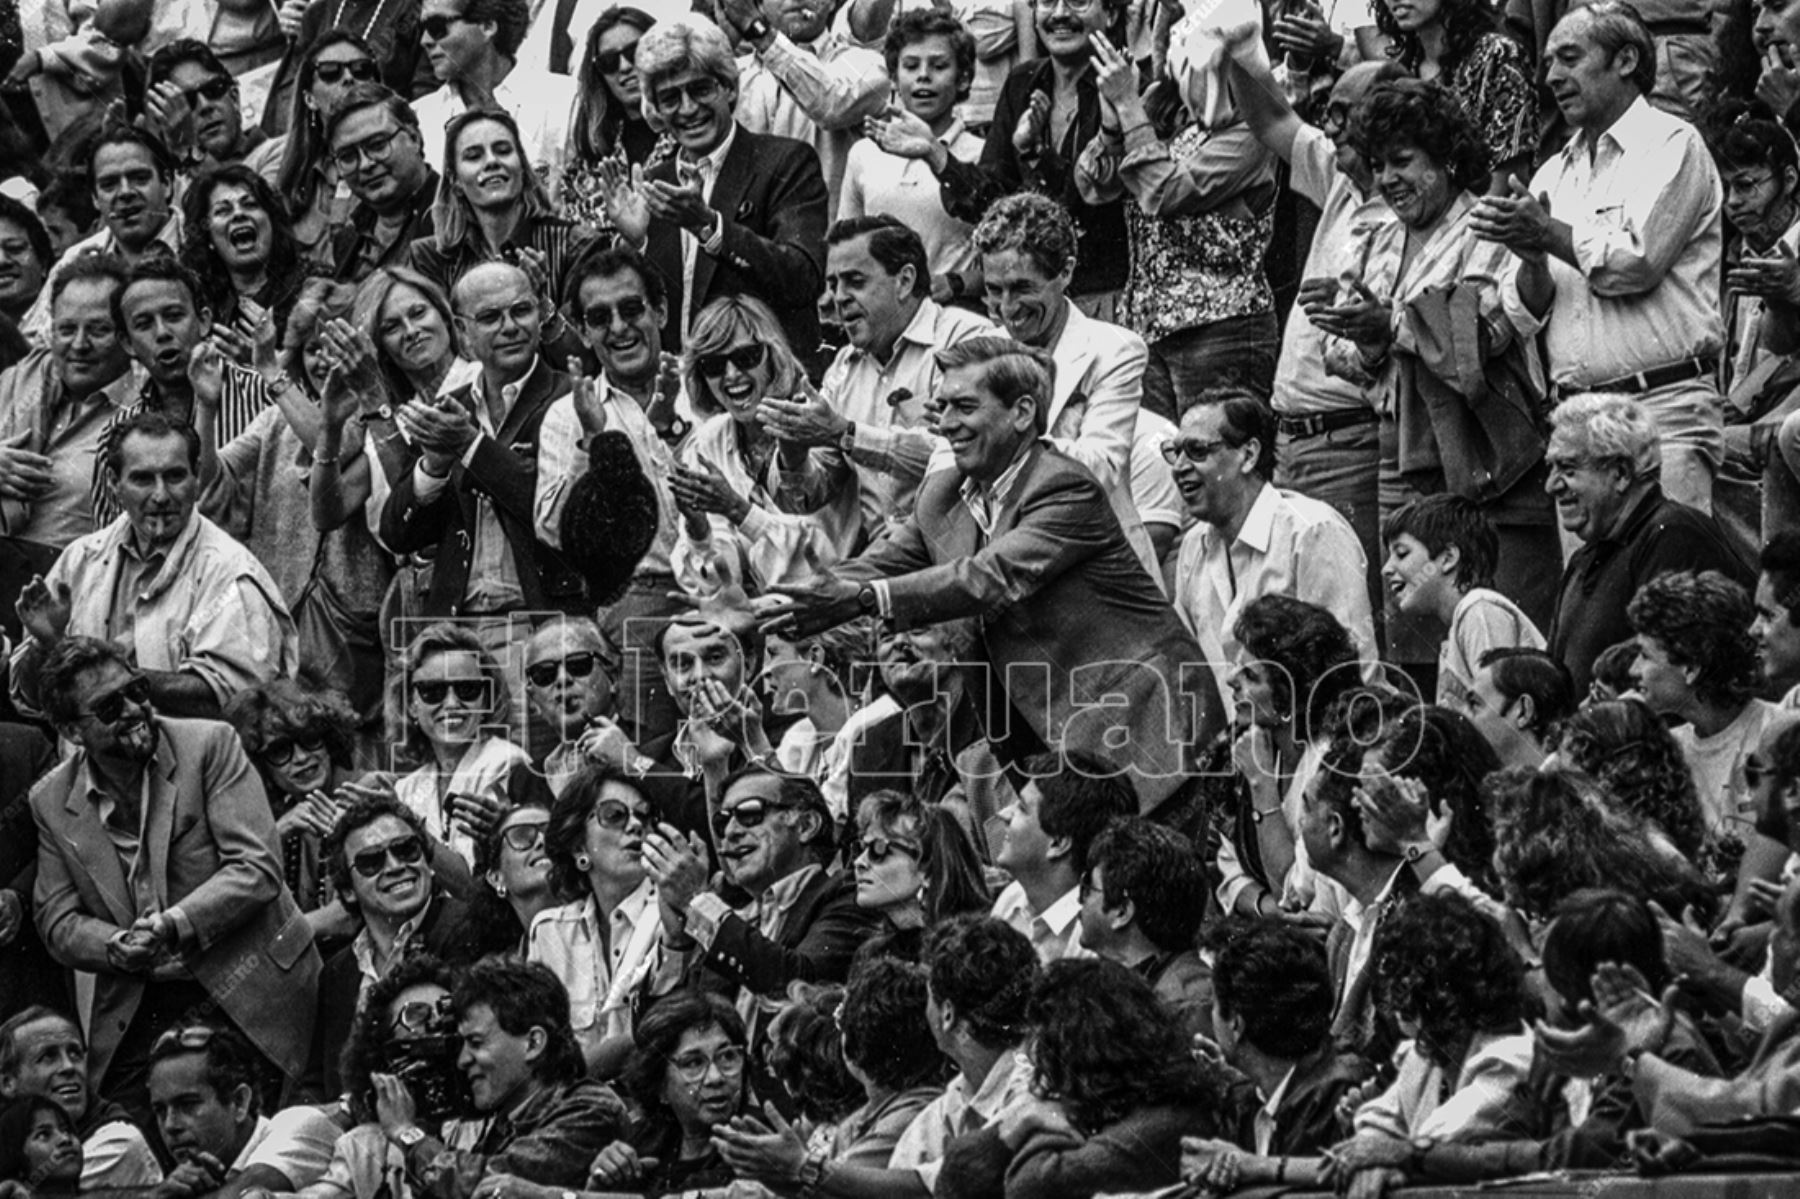 Lima - 26 noviembre 1989 / Escritor Mario Vargas Llosa homenajeado en la Plaza de Acho. Foto: Archivo Histórico de El Peruano / Leoncio Mariscal